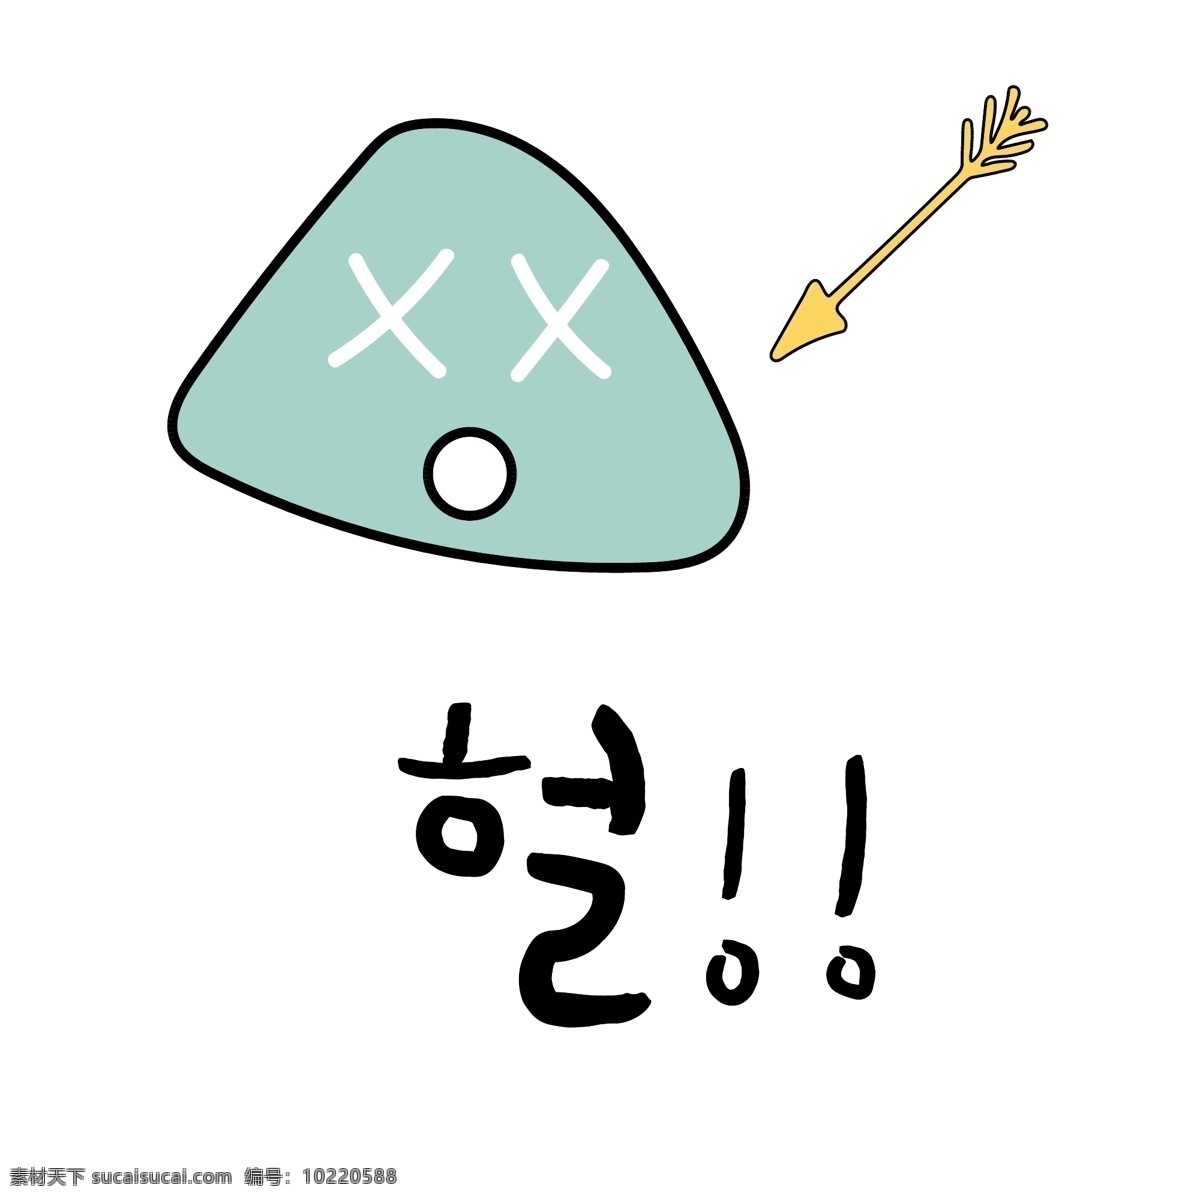 三角 箭头 韩国 常用语 肝药 名黄色 绿色 对话 漫画 小的 向量 n 三角形 日常用语 卡通 晕